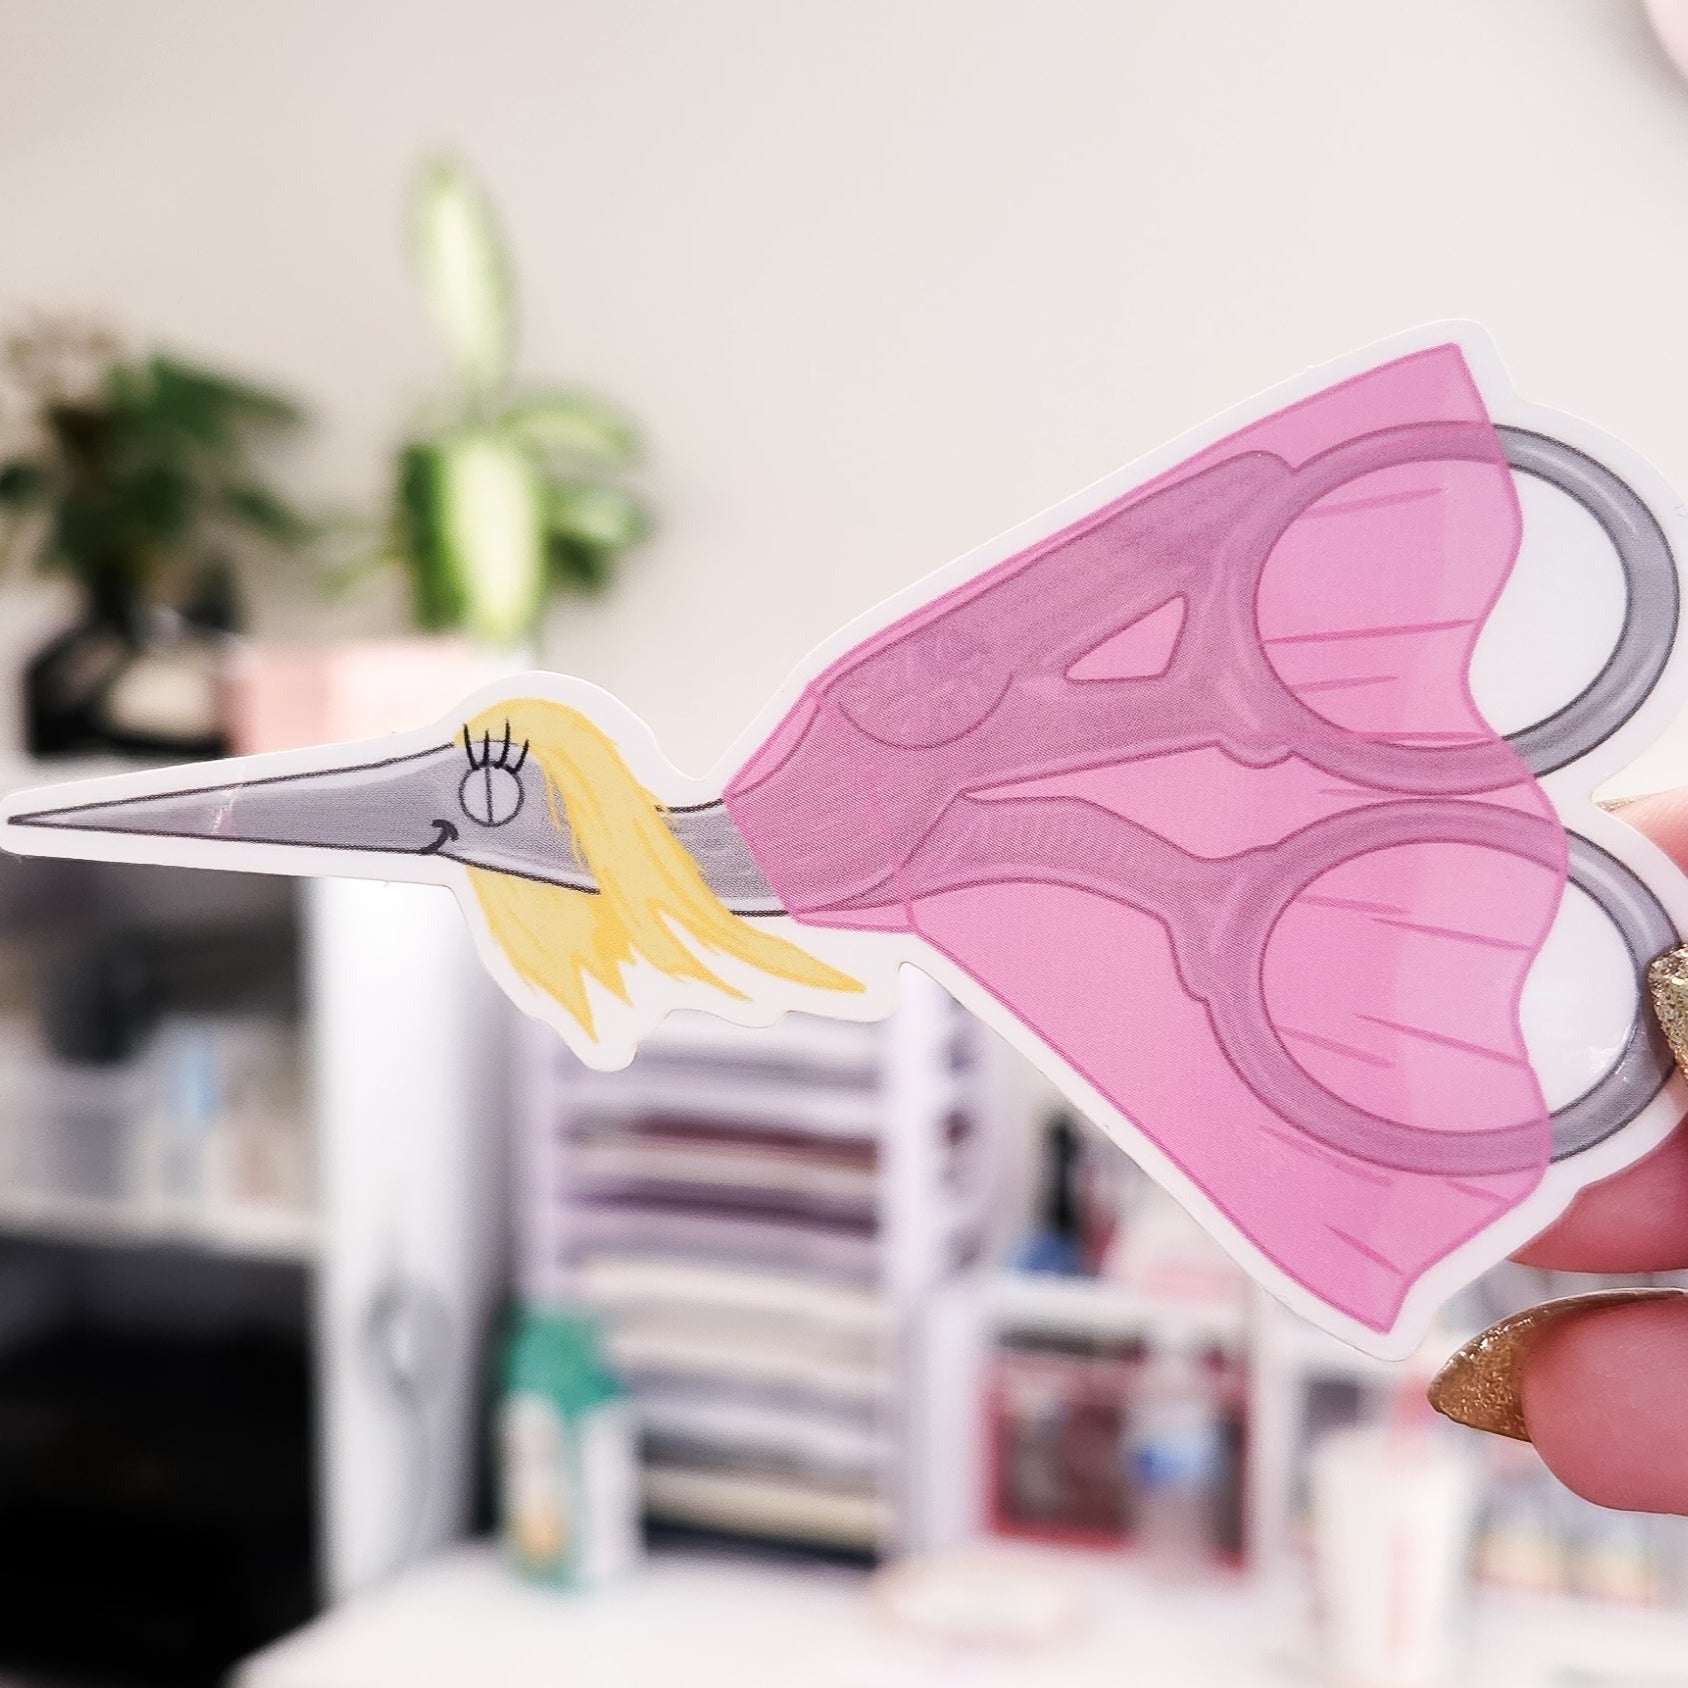 Bird Scissors Sticker – Kat French Design